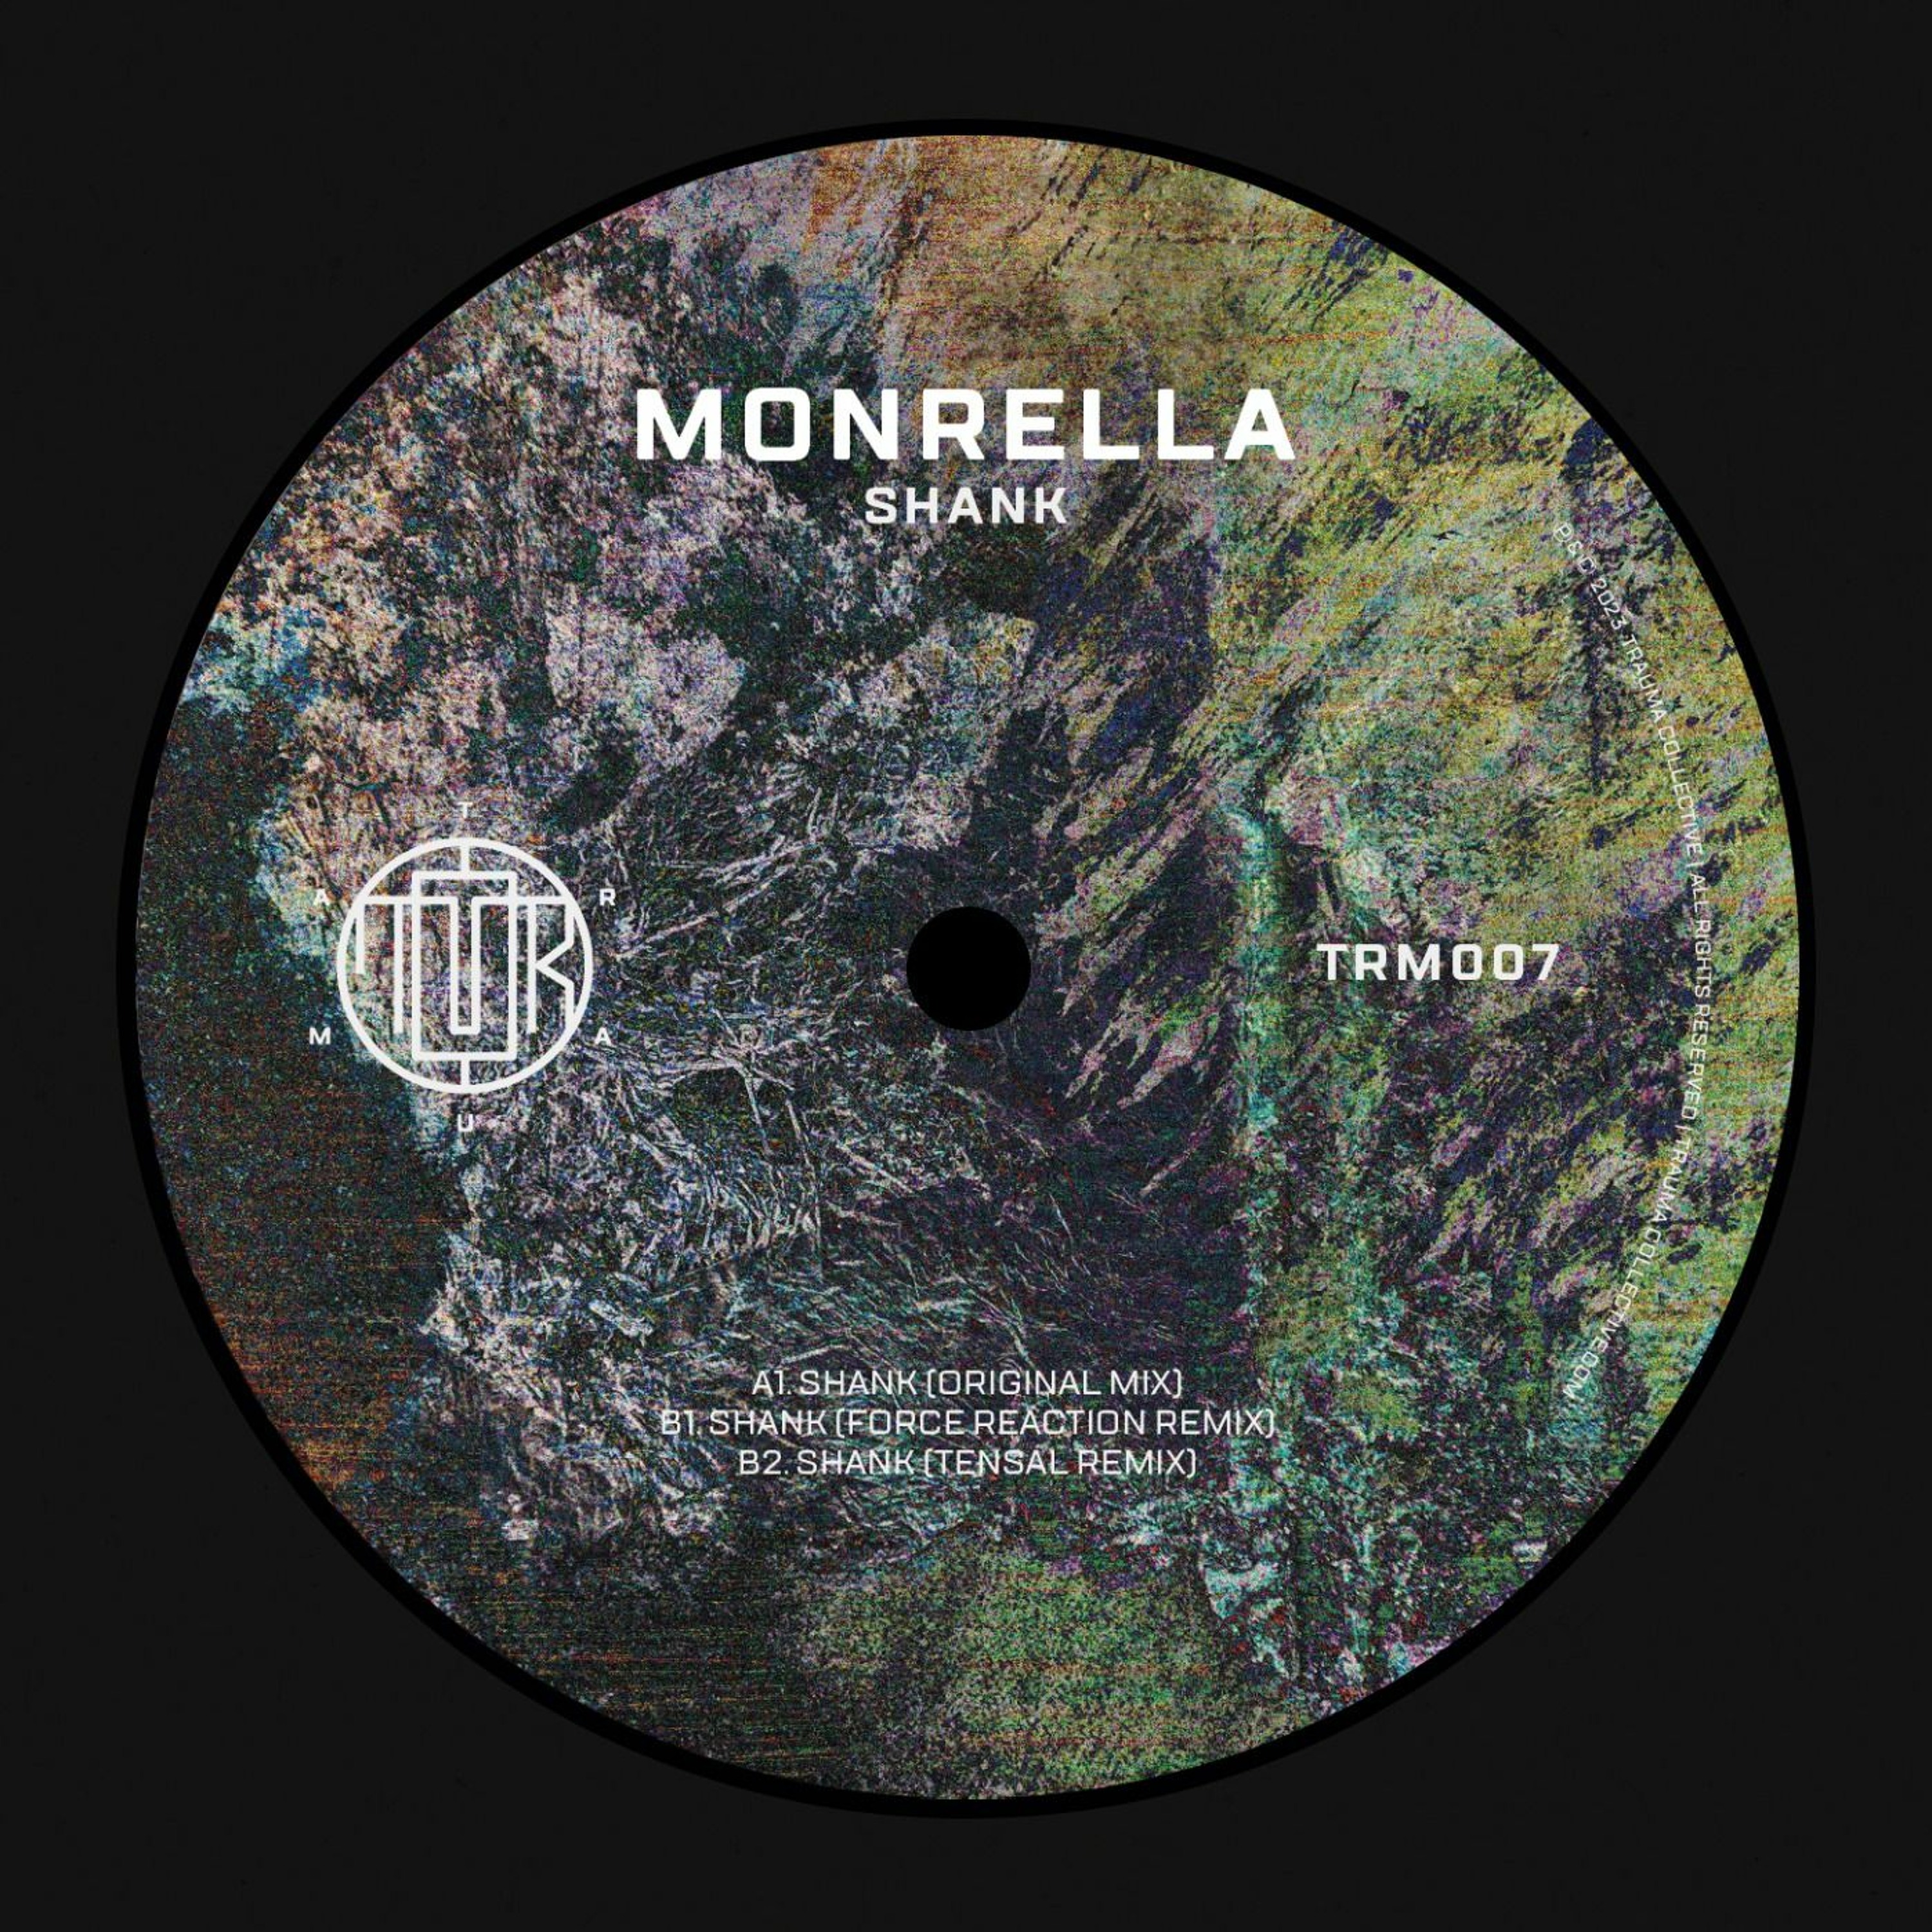 X1. Monrella - Shank (Tensal Remix 2) (Digital Only)